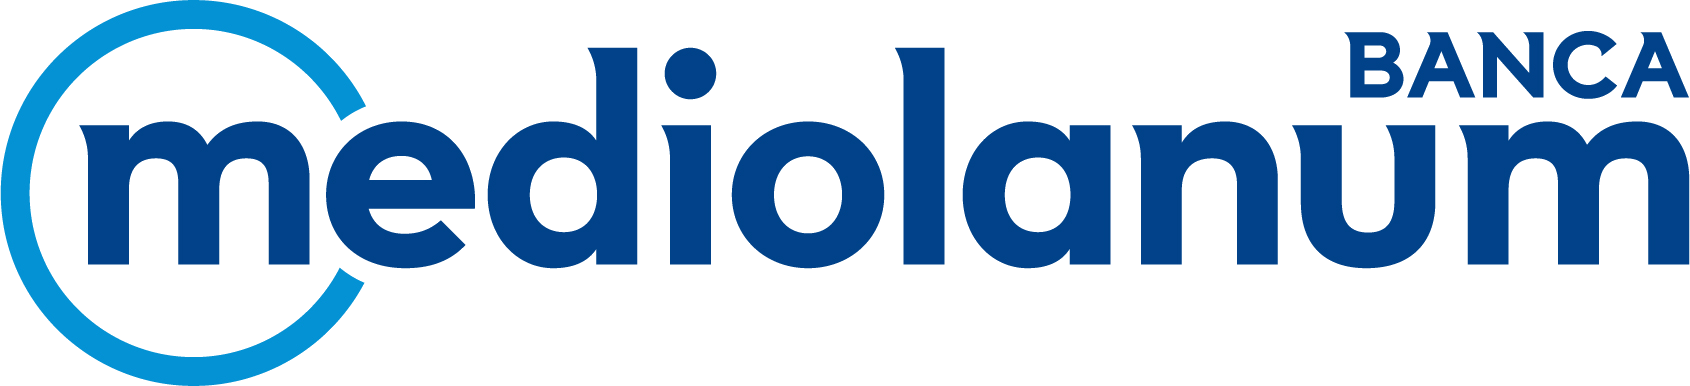 Banca_Mediolanum_Logo_2015